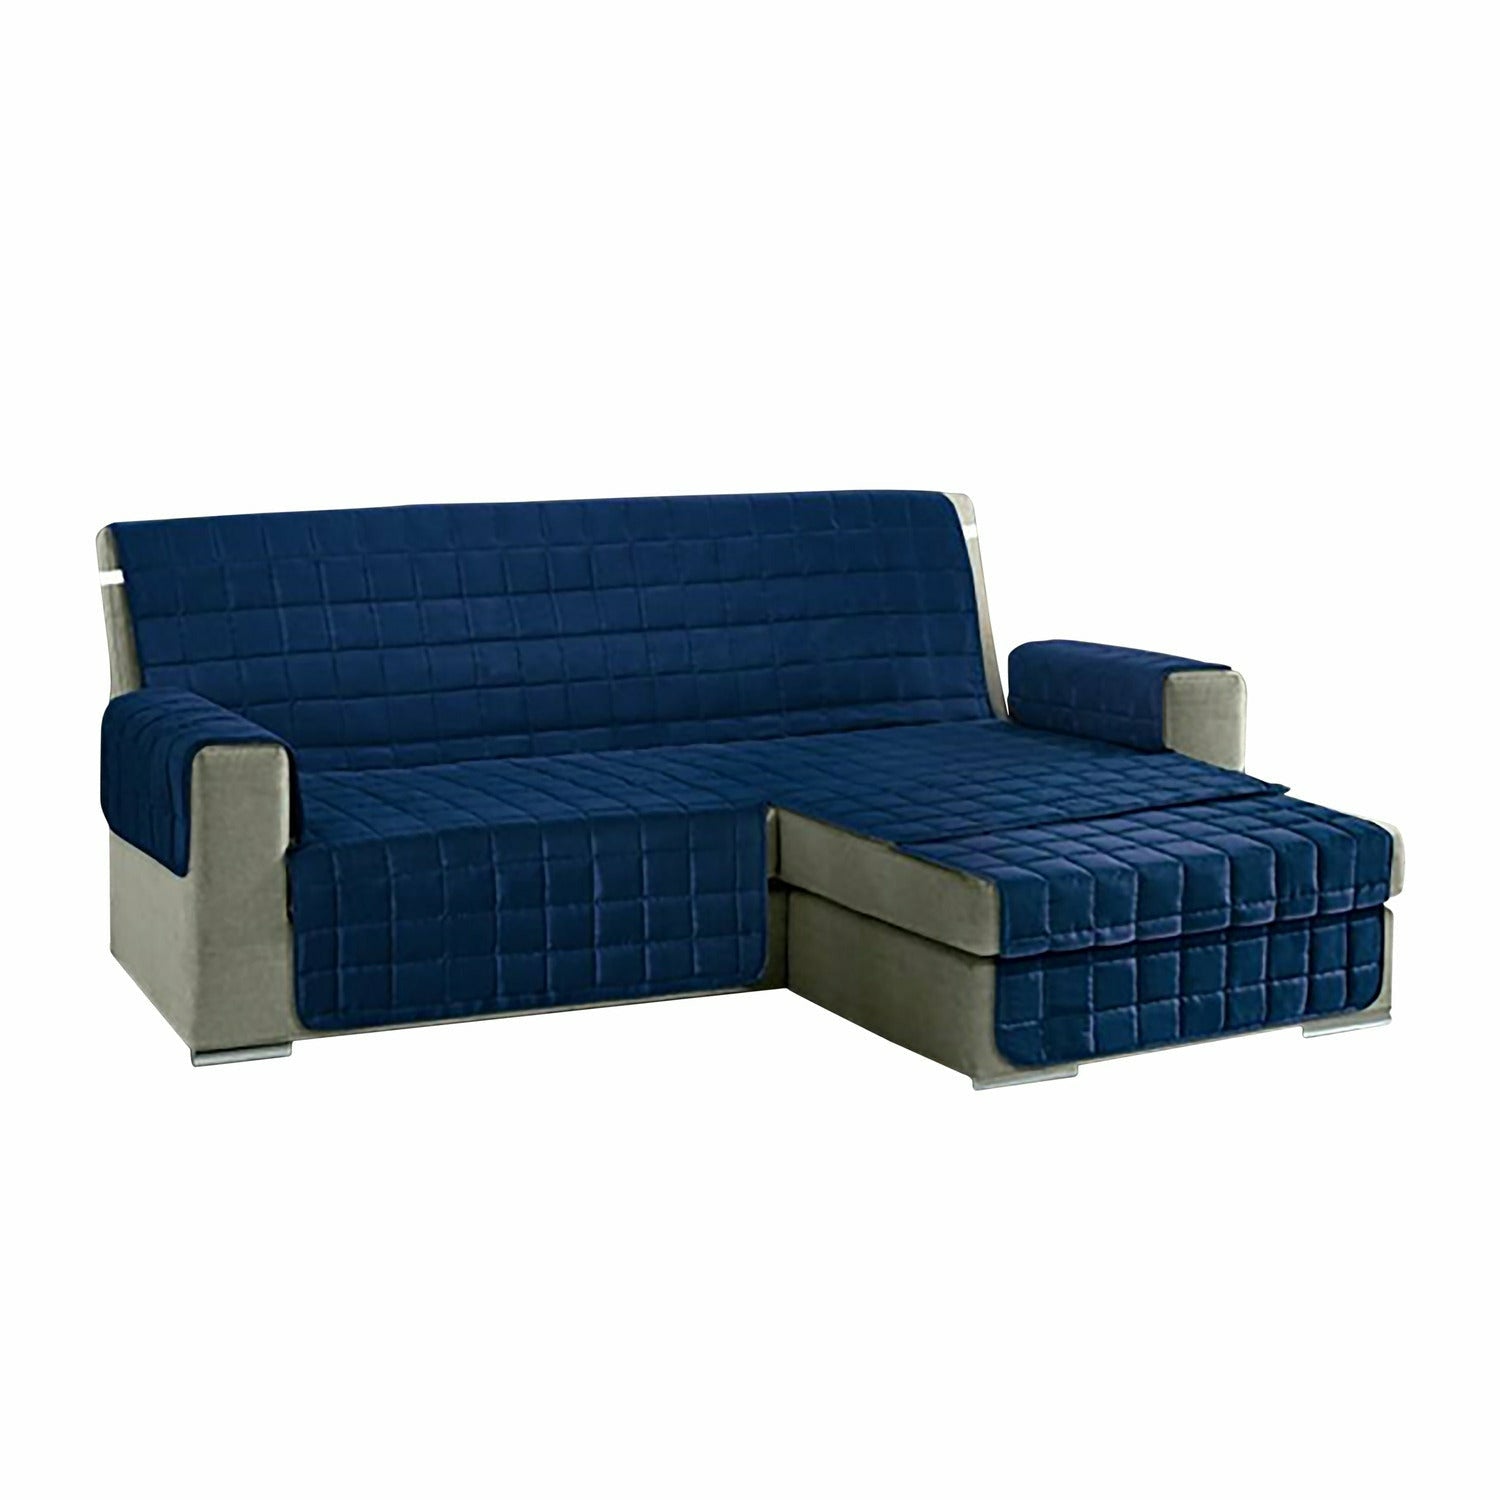 Salvadivano universale per divano a penisola stampato in tinta unita blu  Misura Seduta cm. 190